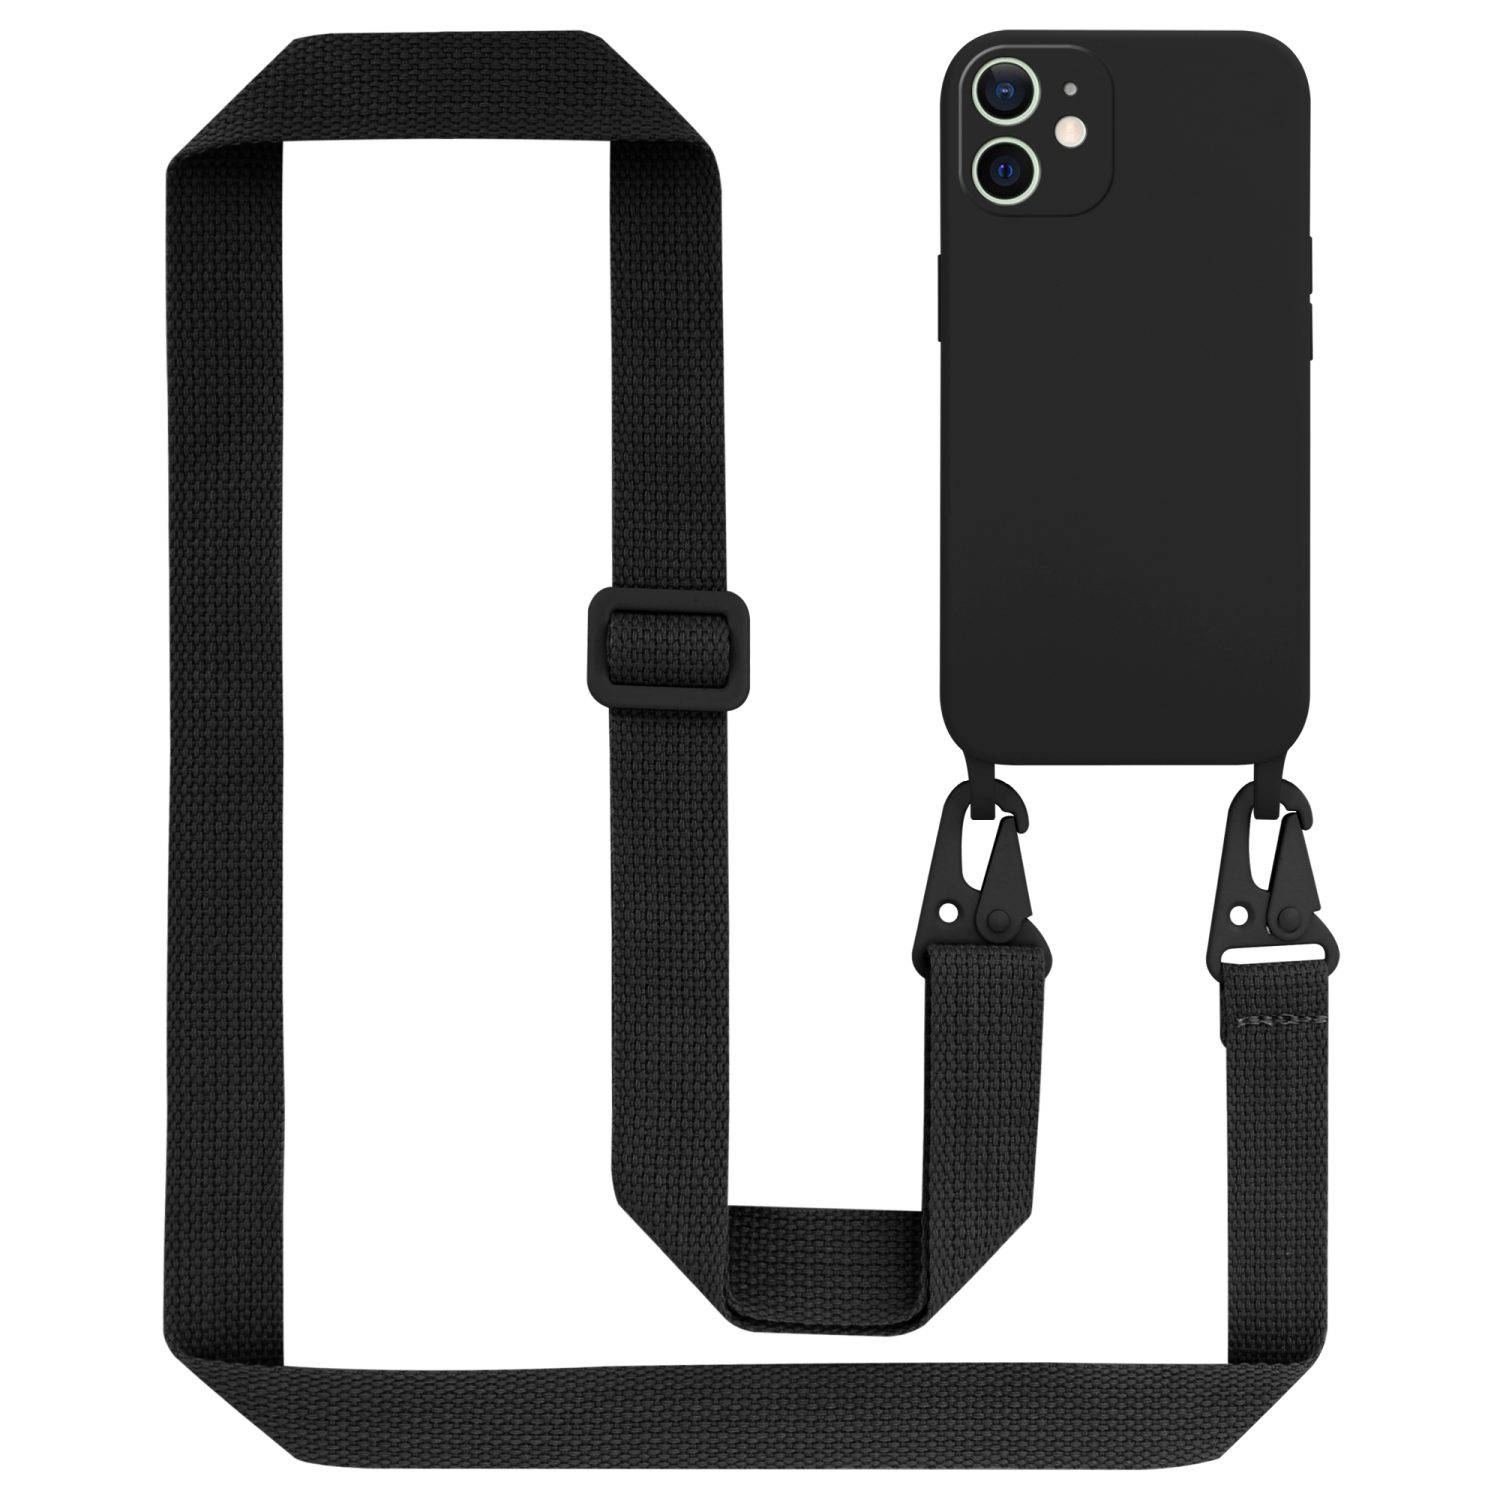 Cadorabo Mobiele telefoon ketting voor Apple iPhone 12 MINI in LIQUID ZWART - Silicone beschermhoes met lengte verstelbare koord riem